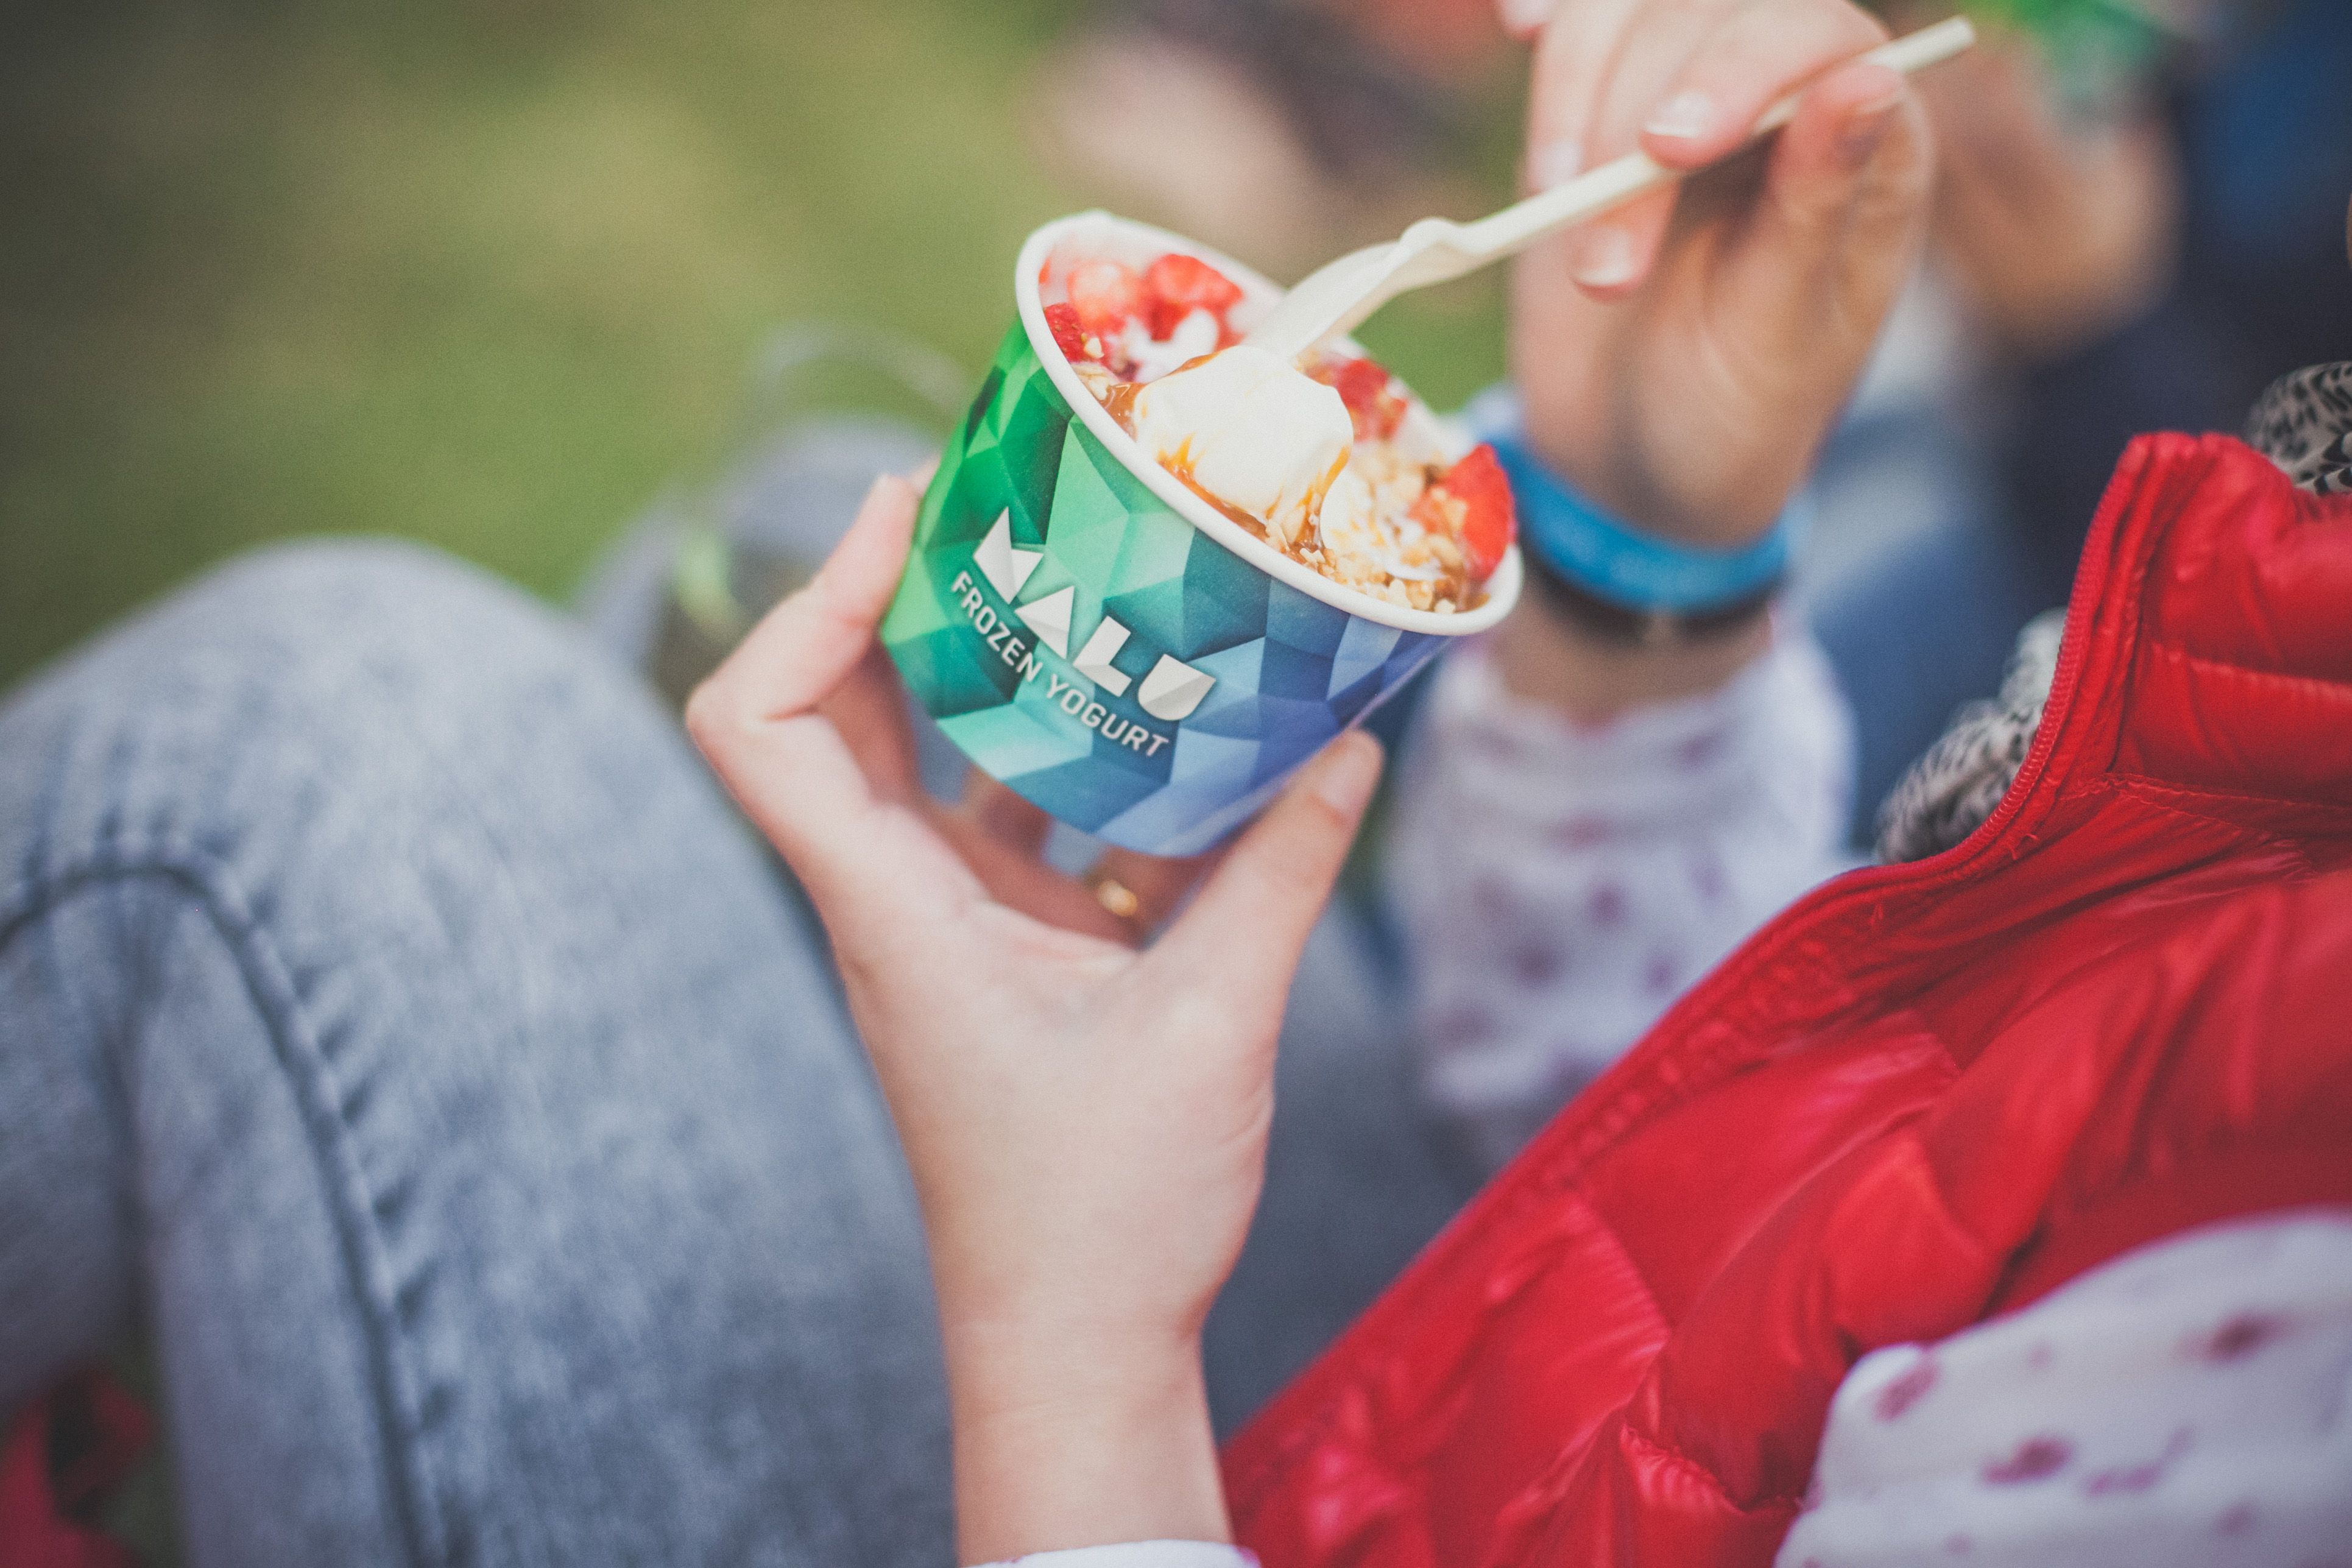 Eis oder Yogurt - das ist die Frage bei Malu